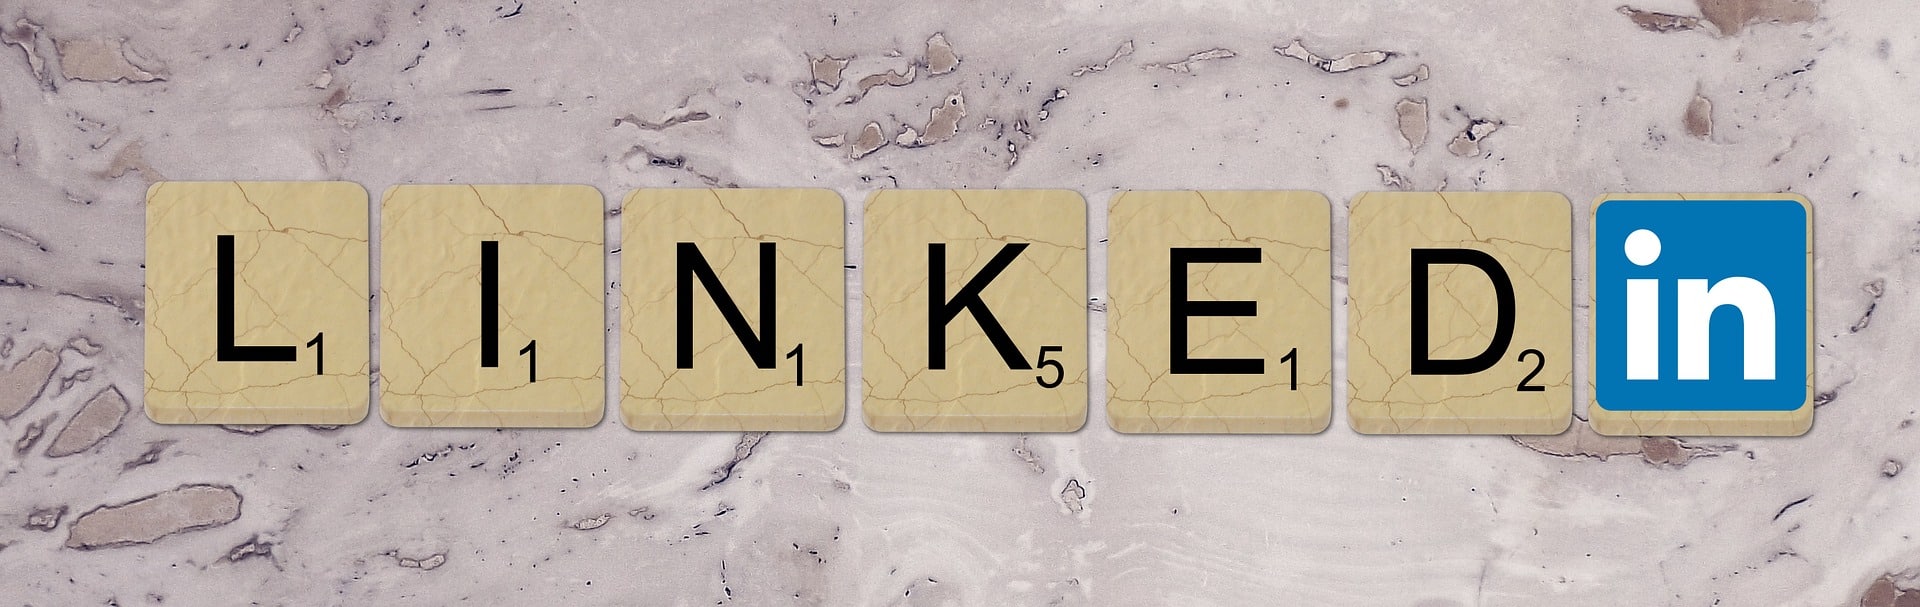 LinkedIn spelled out using scrabble tiles